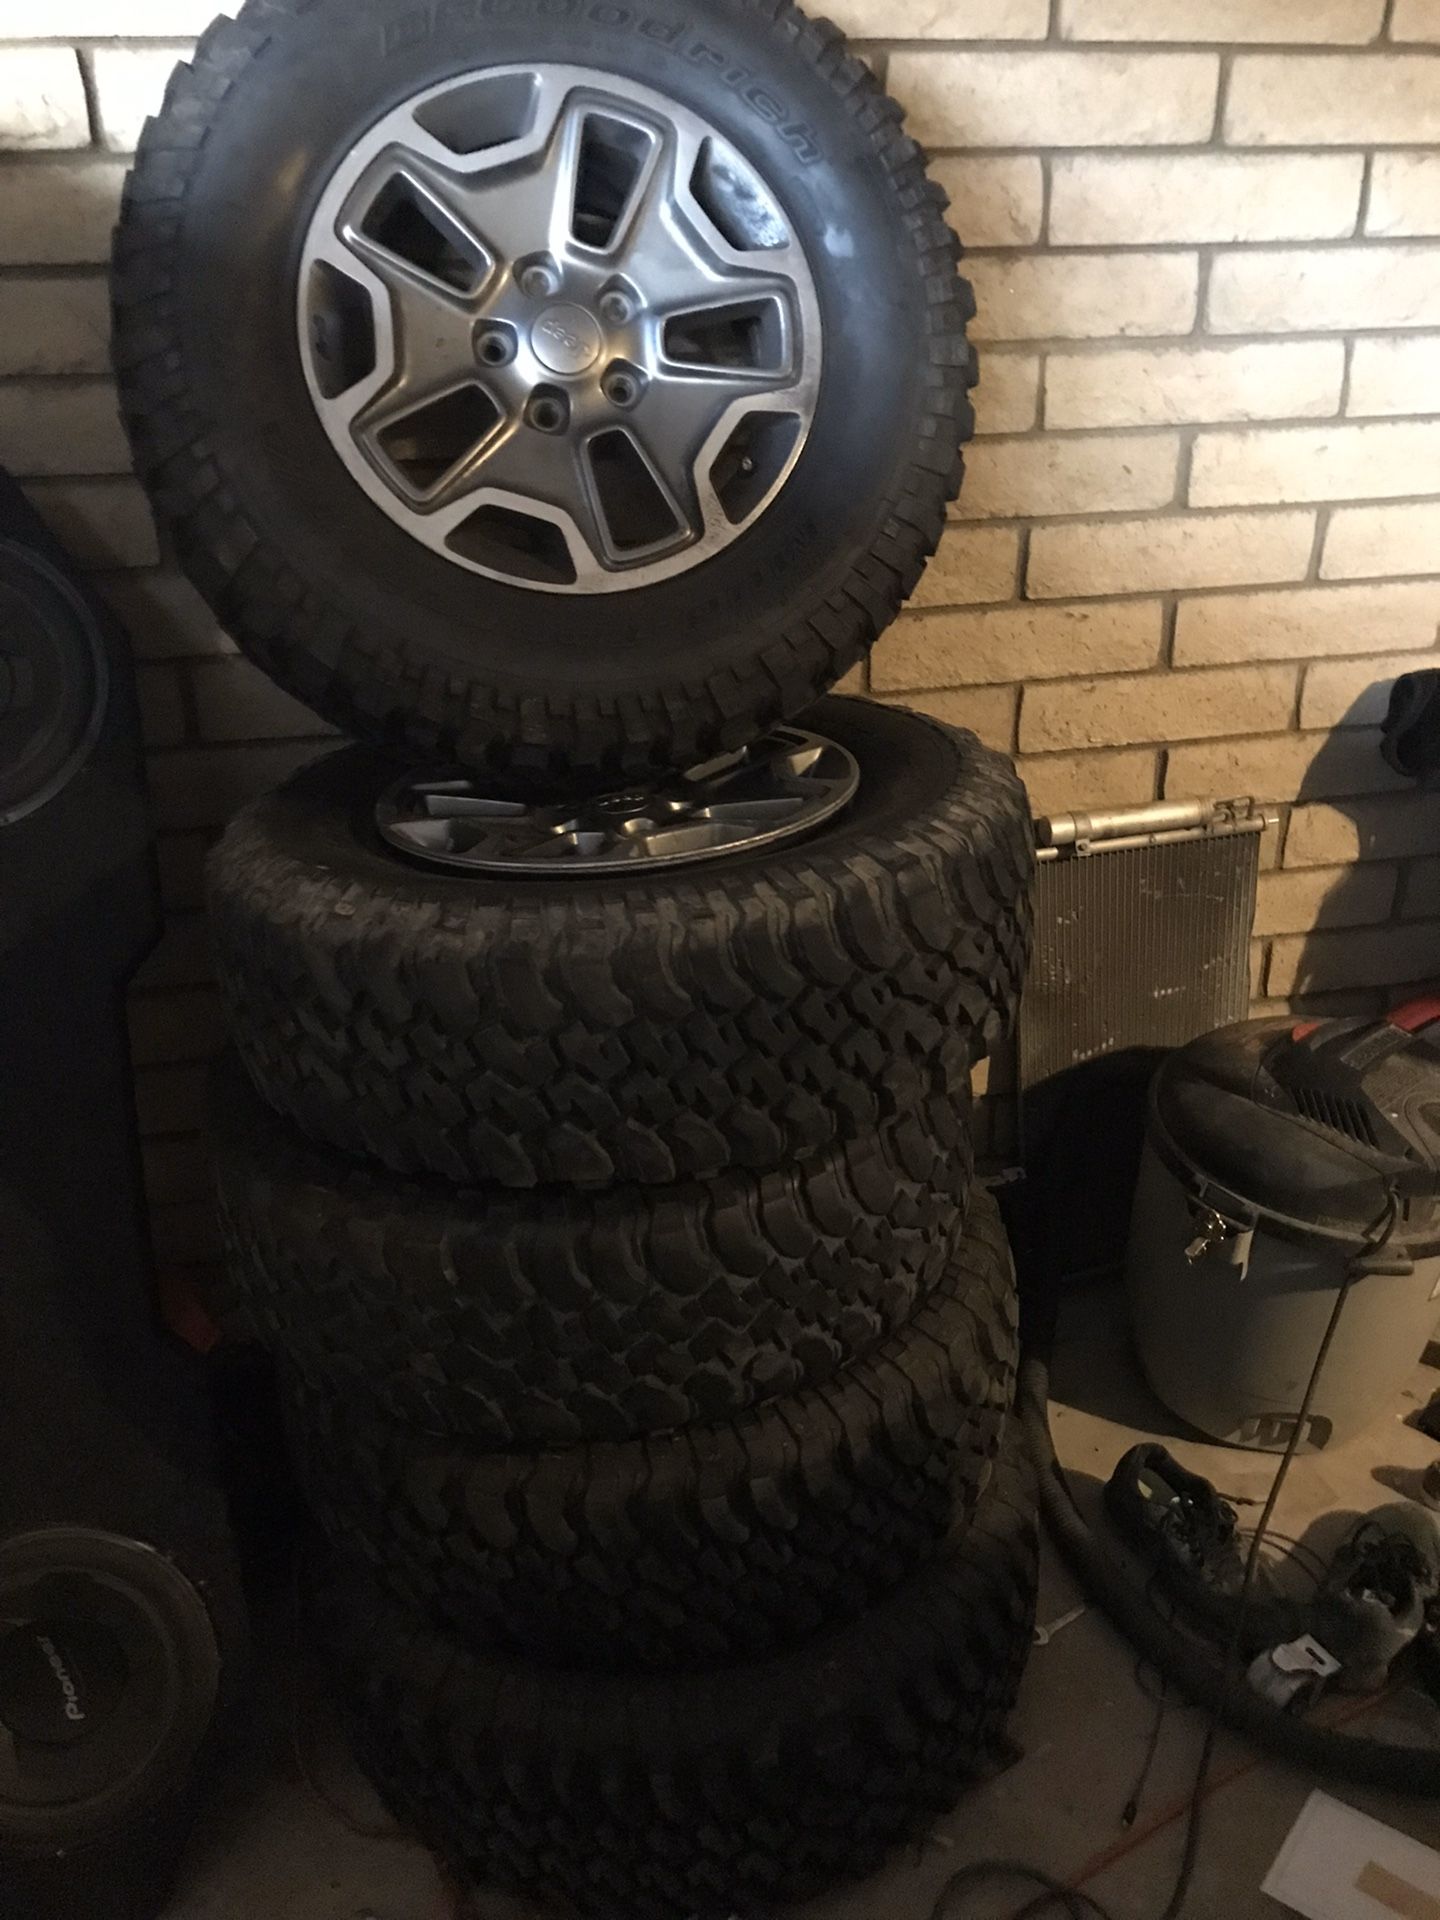 Wrangler wheels & tires